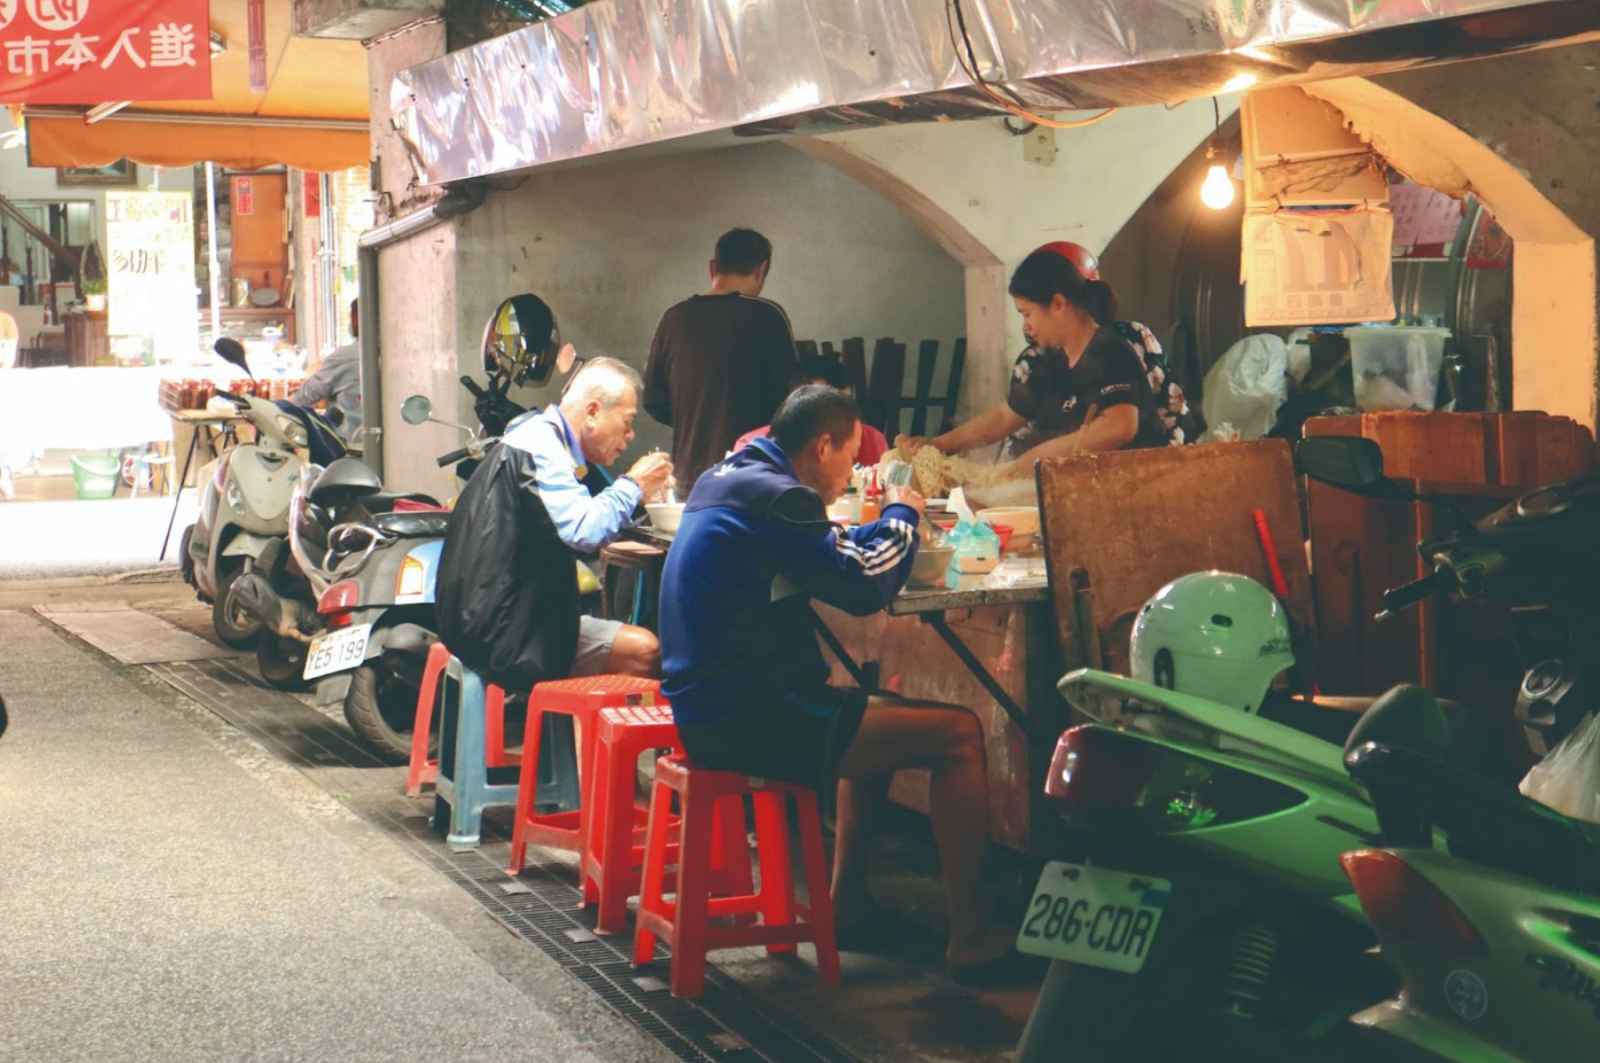 紅塑膠椅-攤販-傳統市場-台灣-城市規劃-城市治理-都市發展